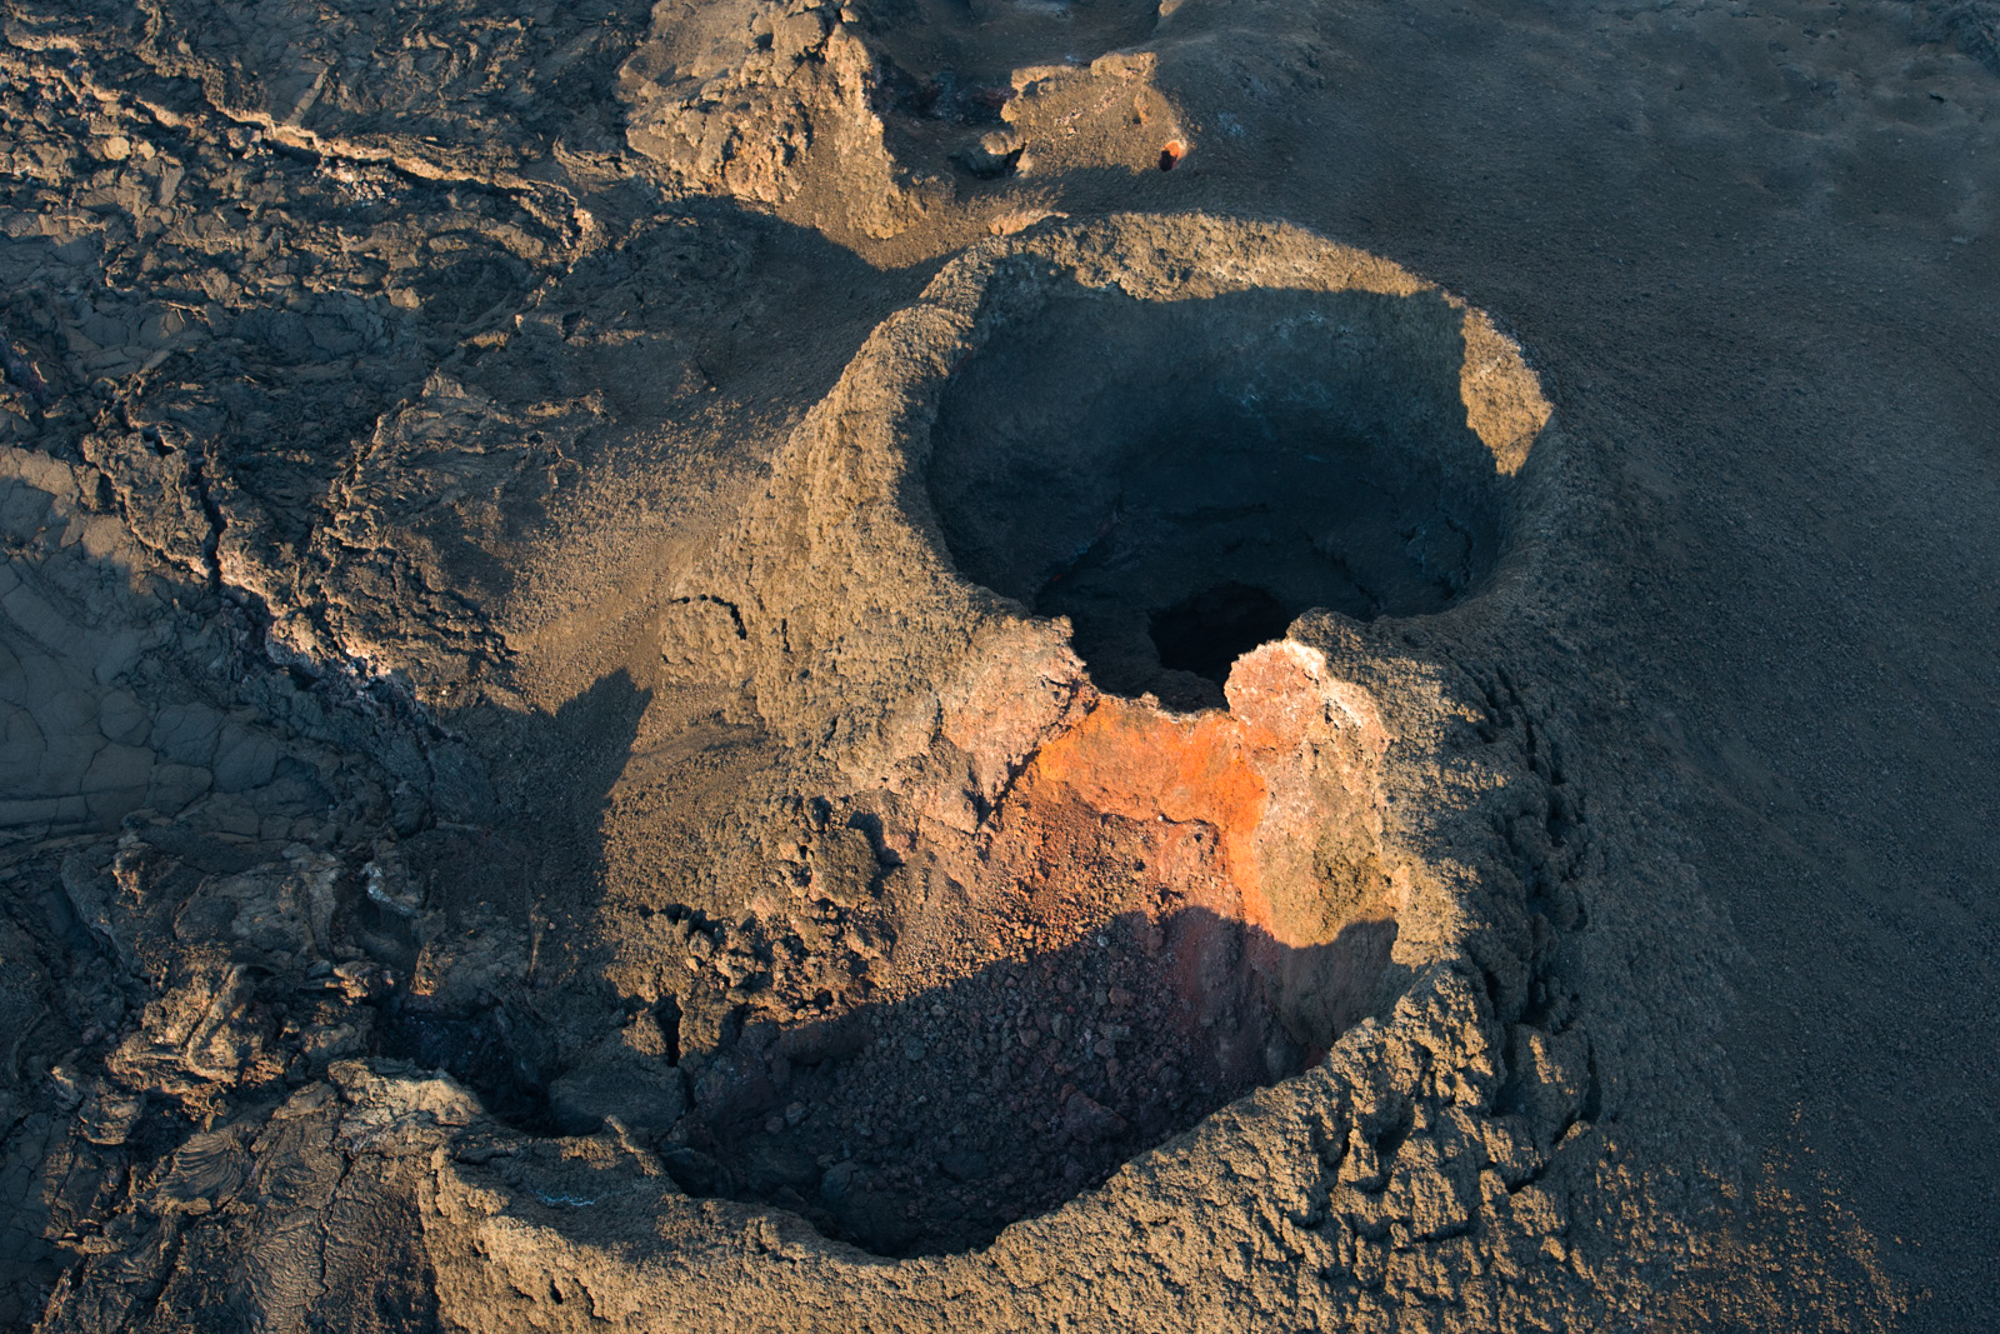 Main crater of Holuhraun